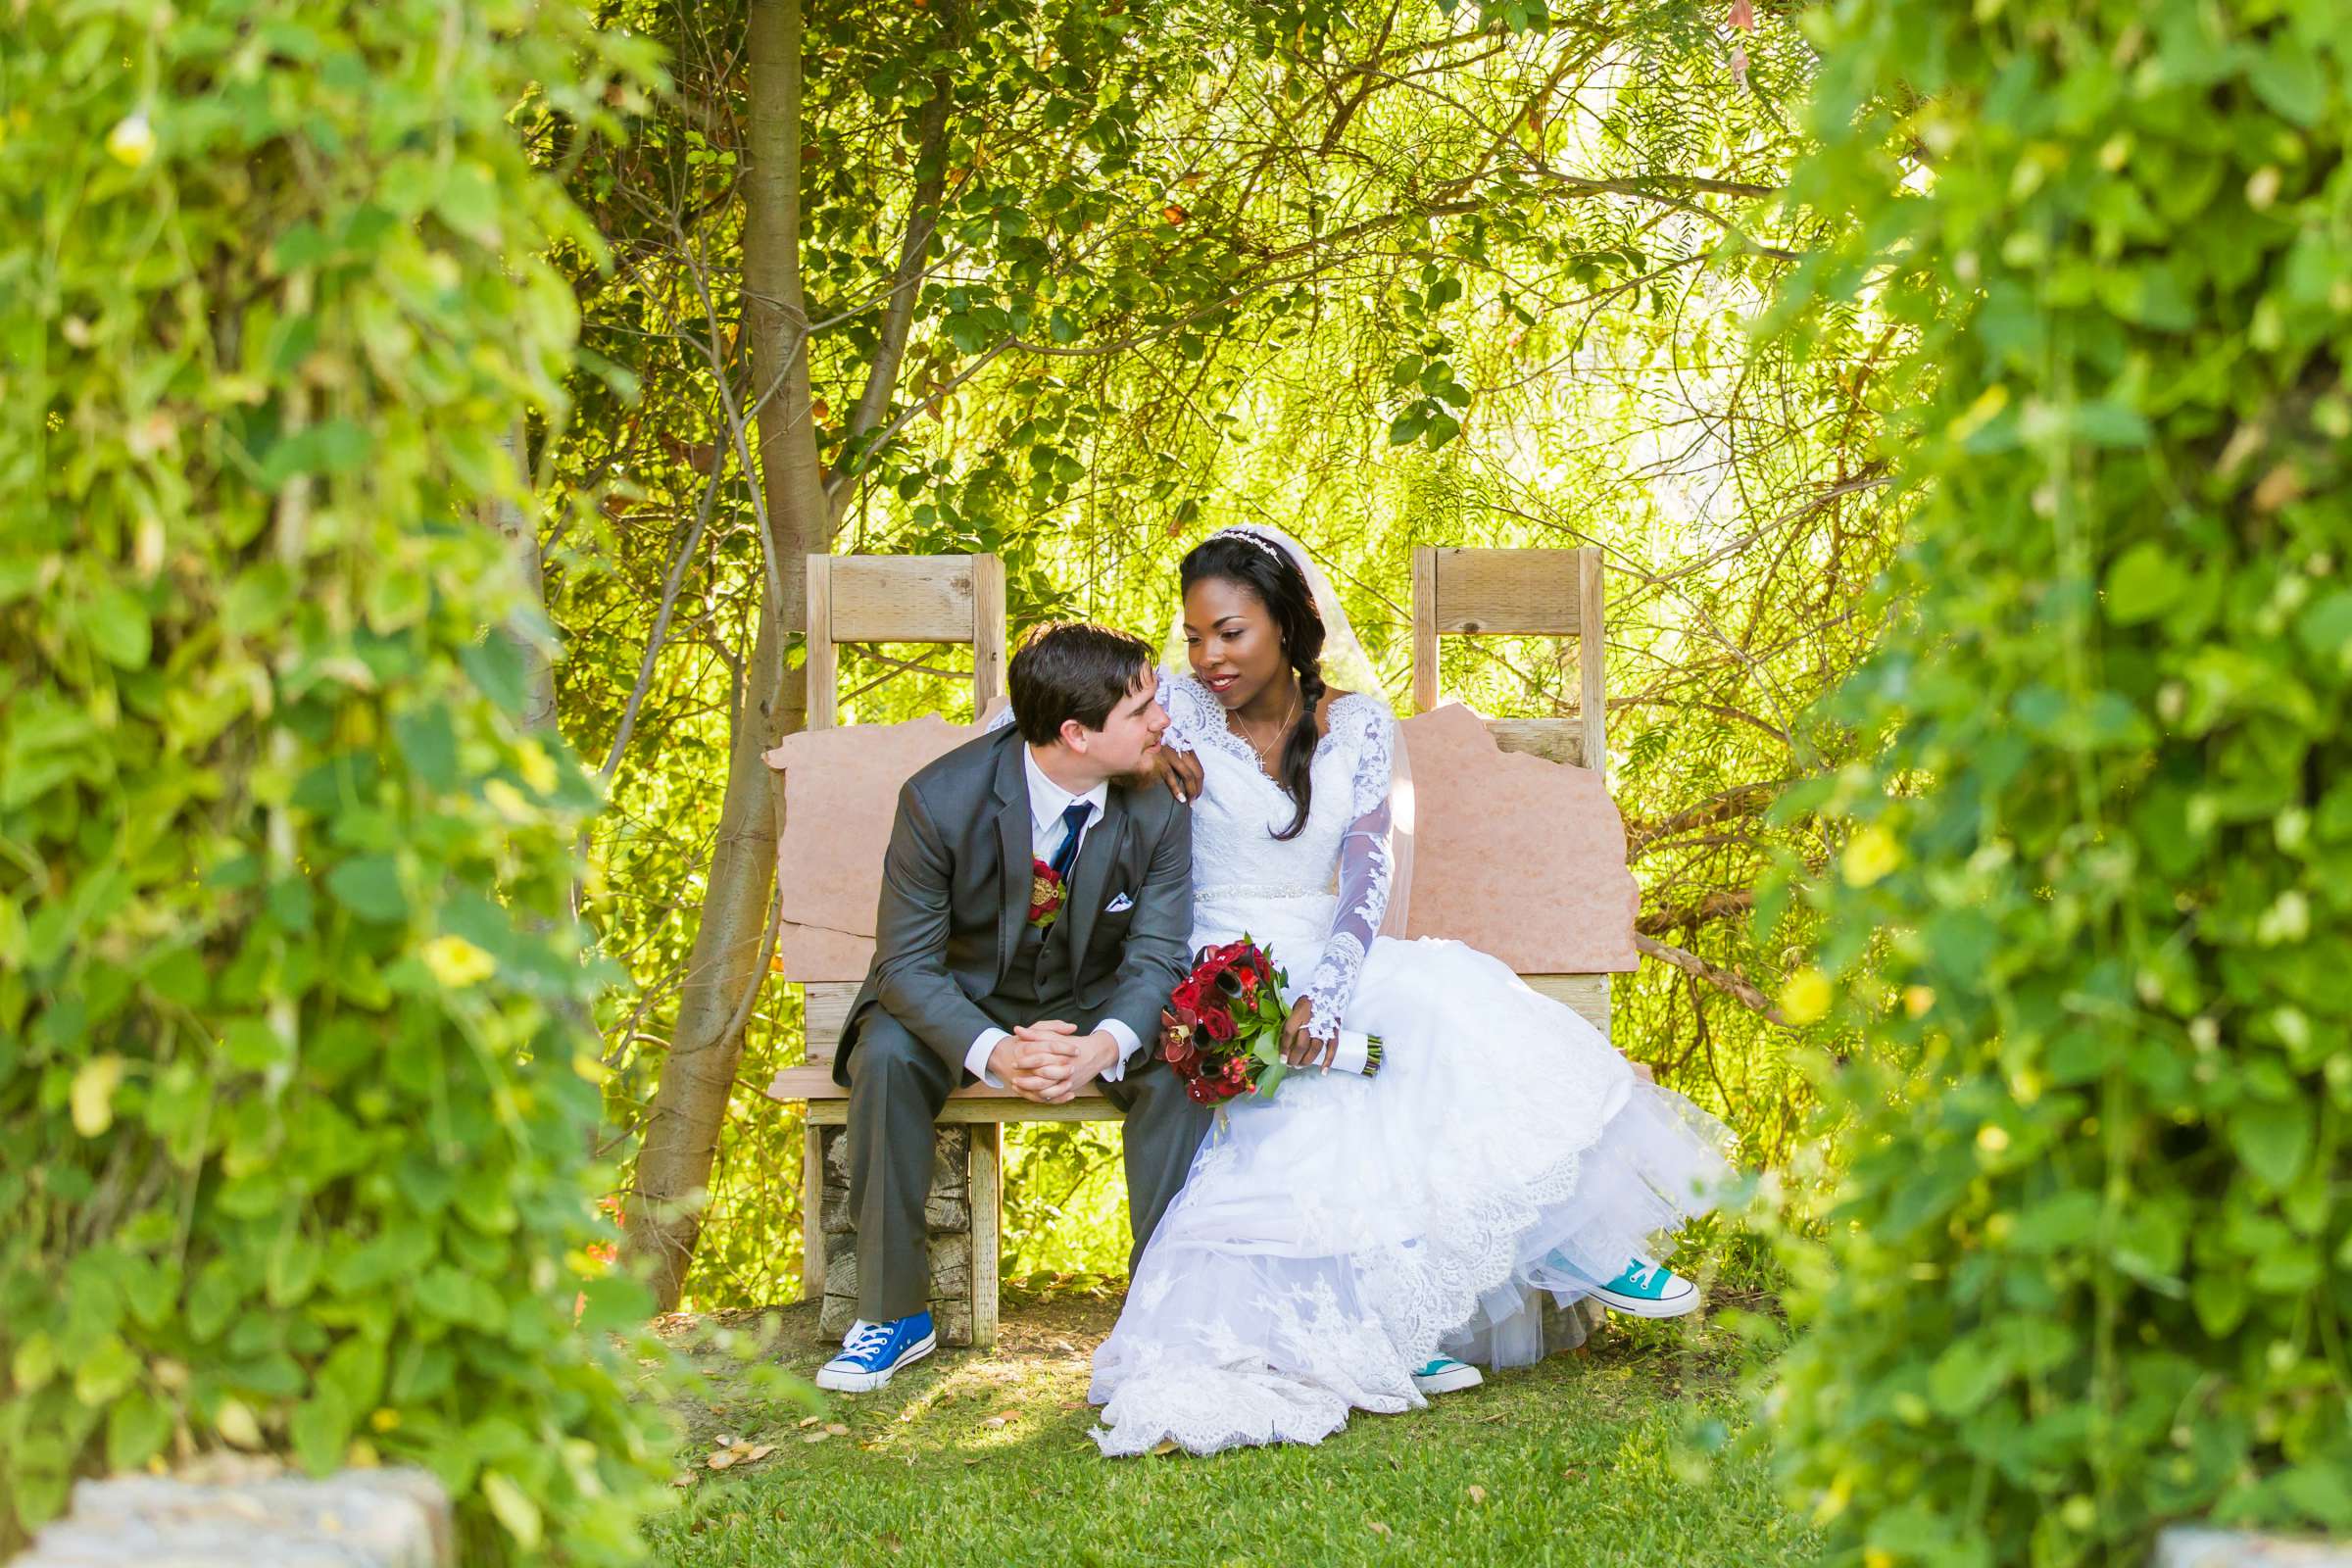 Fallbrook Hacienda Wedding, Elizabeth and Nicholas Wedding Photo #425268 by True Photography